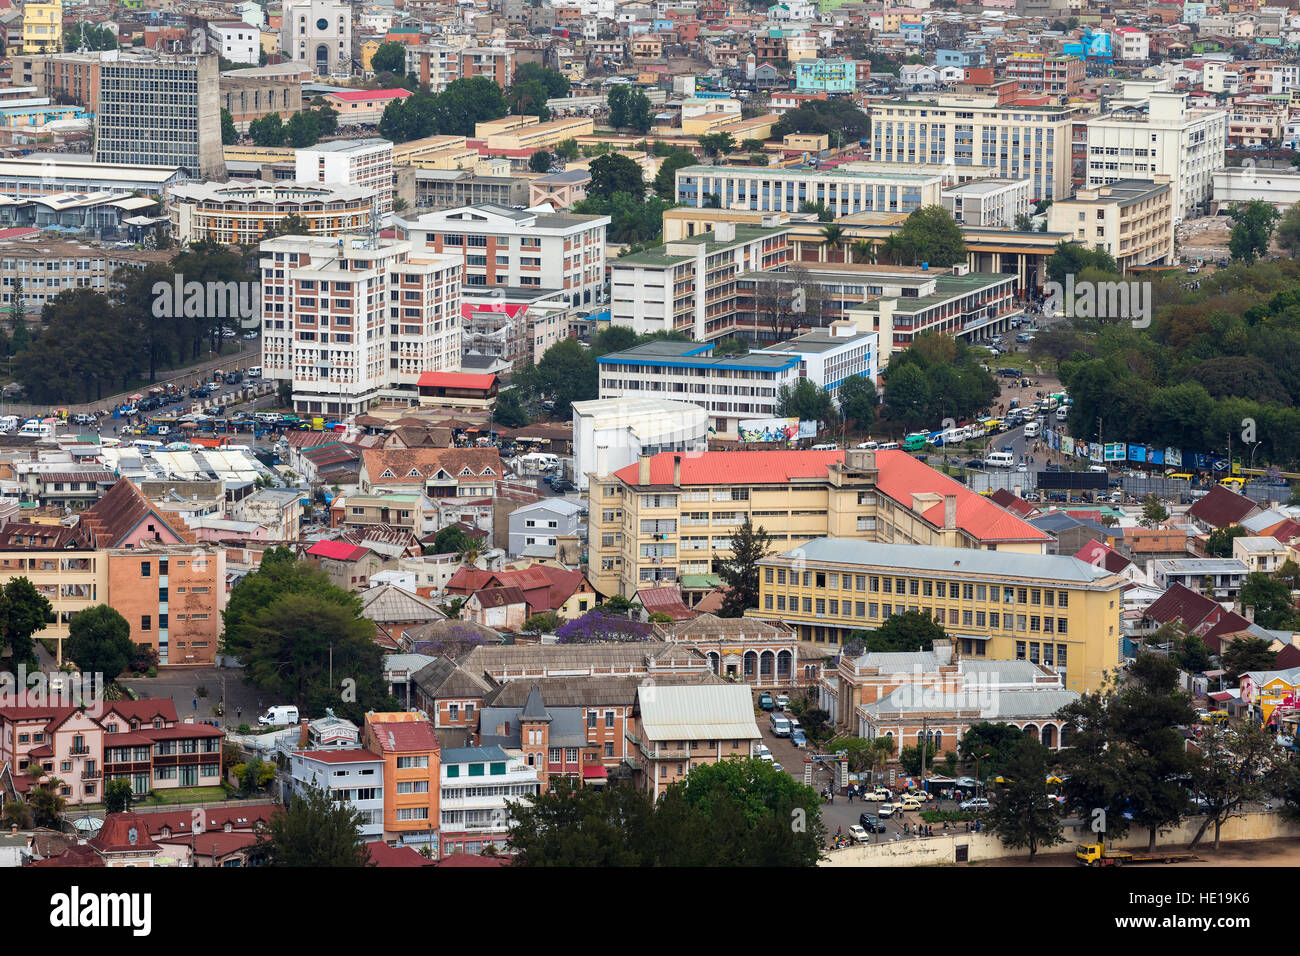 Antananarivo, französische Namen Tananarive, kurze Name Tana, sehr schlechte Hauptstadt und größte Stadt in Madagaskar, NY Republik. Ansicht von oben auf Cent Stockfoto